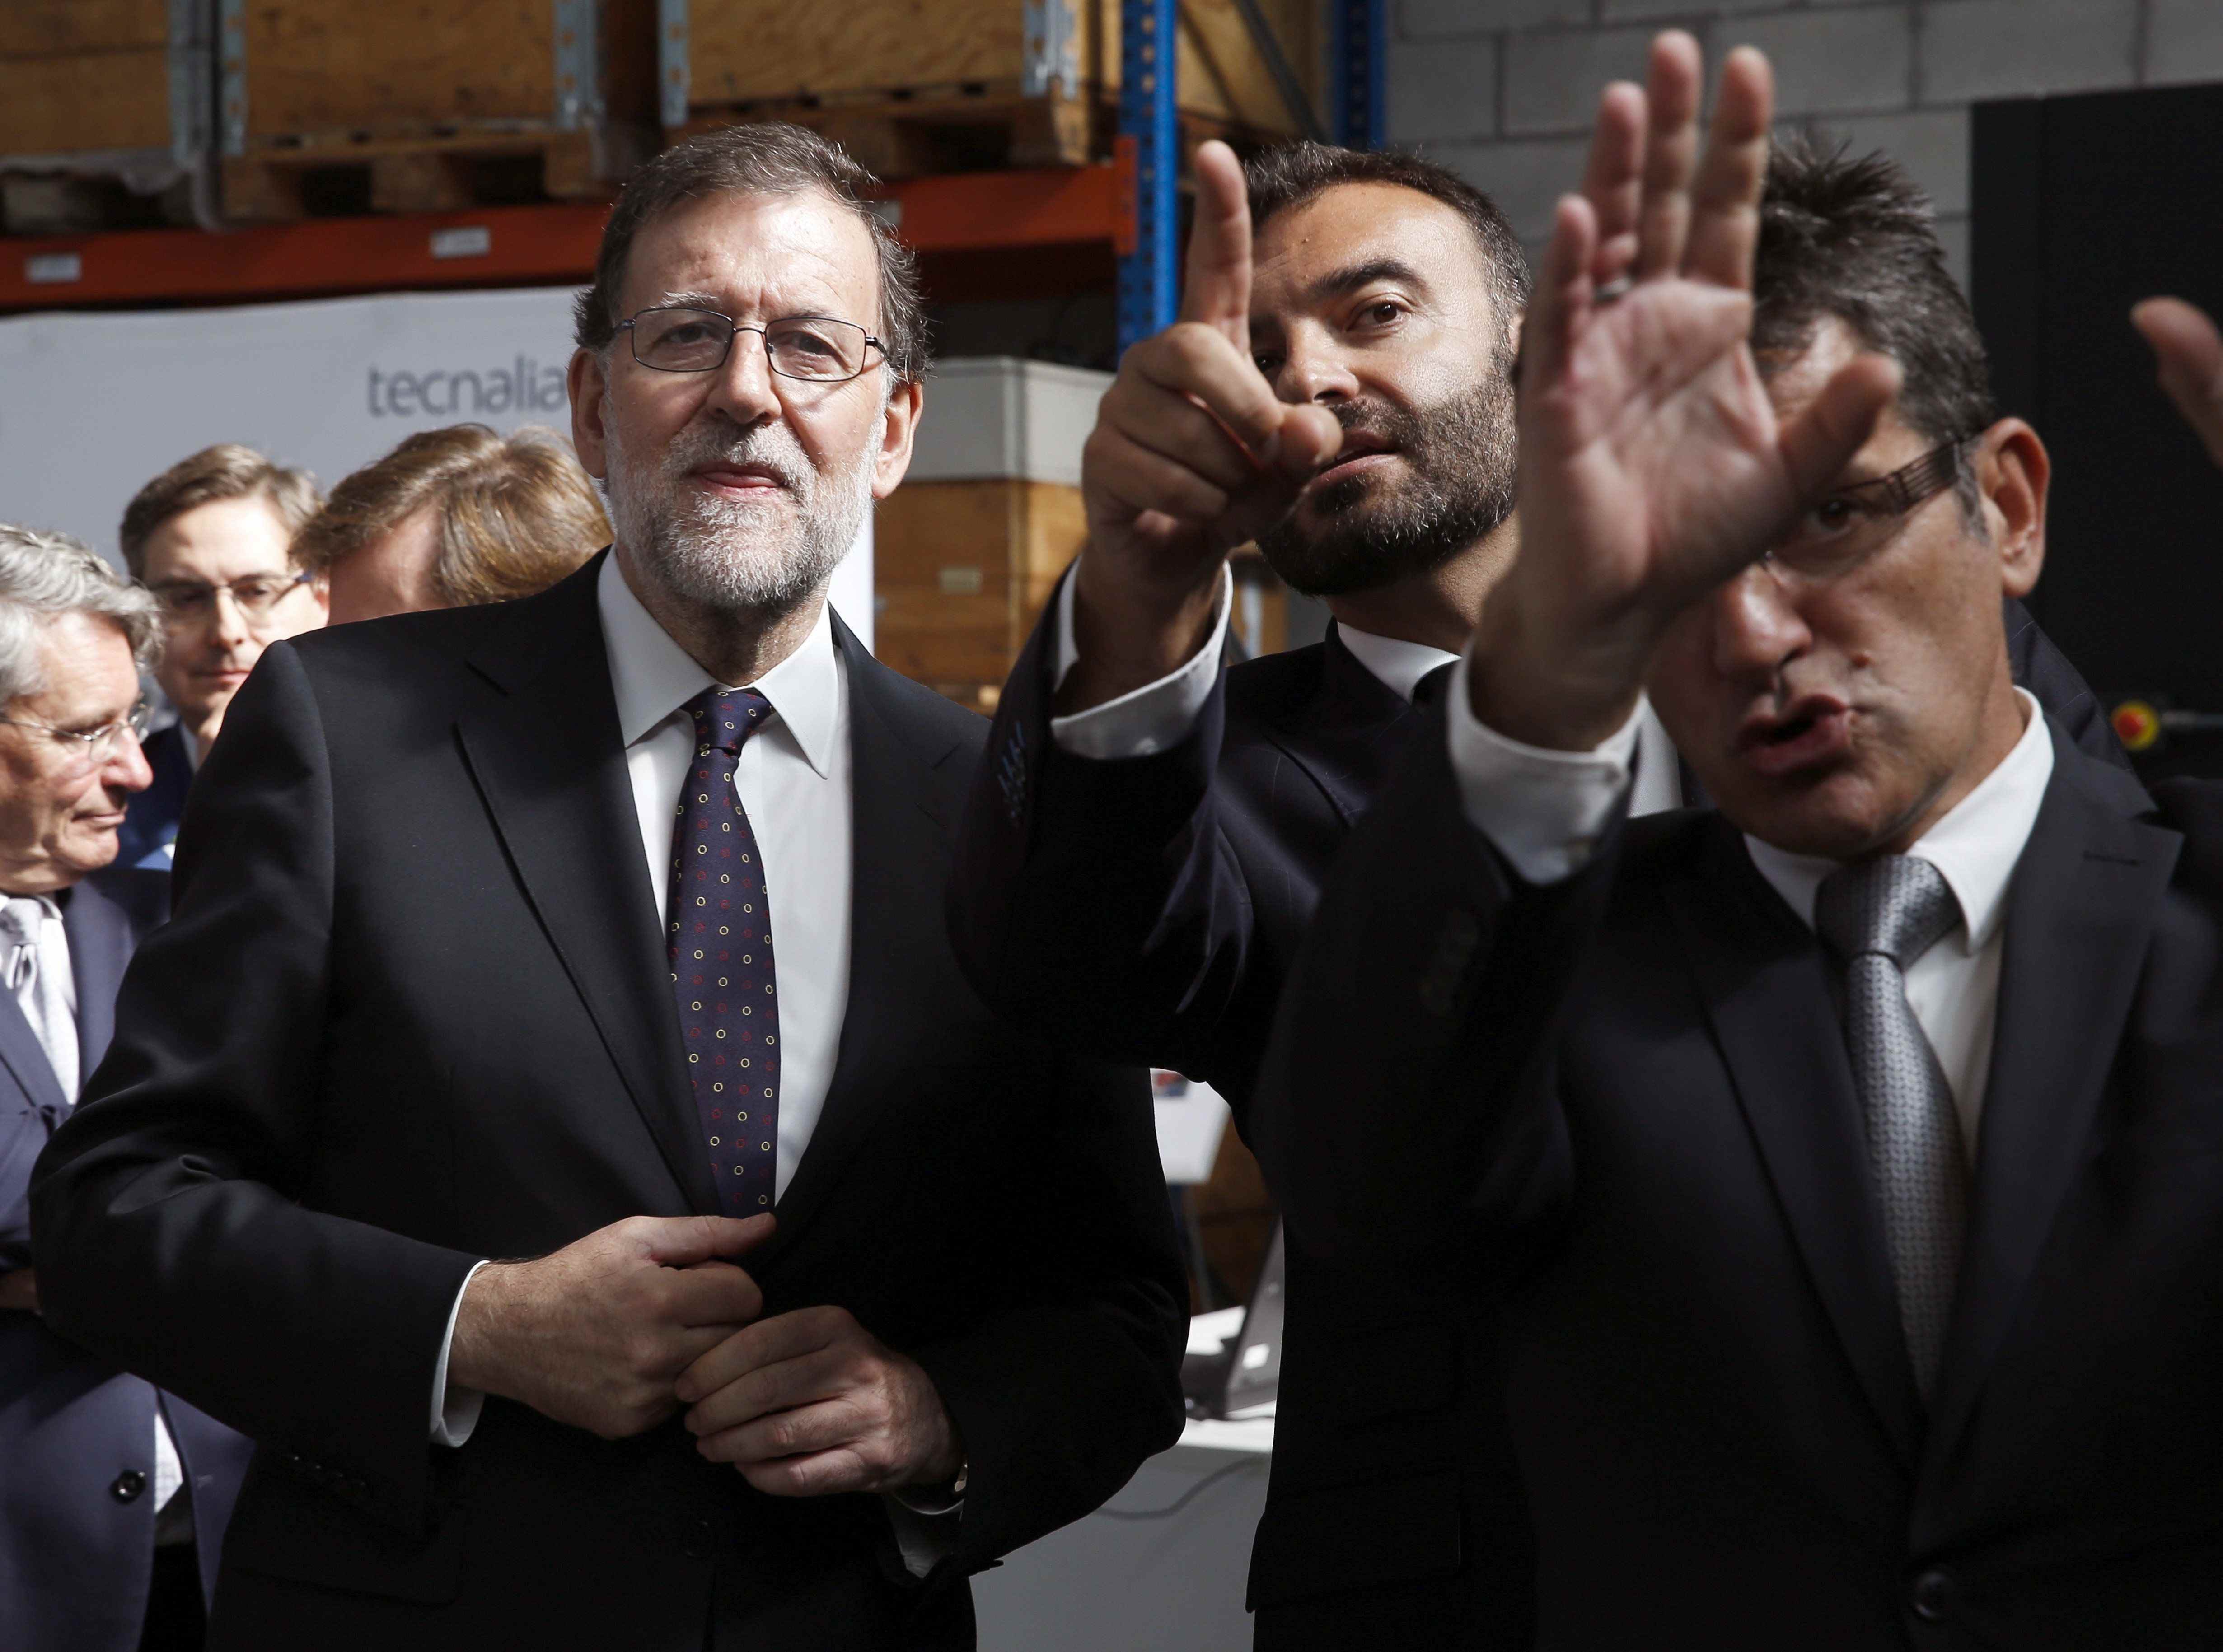 Rajoy s'enganxa al relat del Rei i apel·la al diàleg per "trobar una solució"